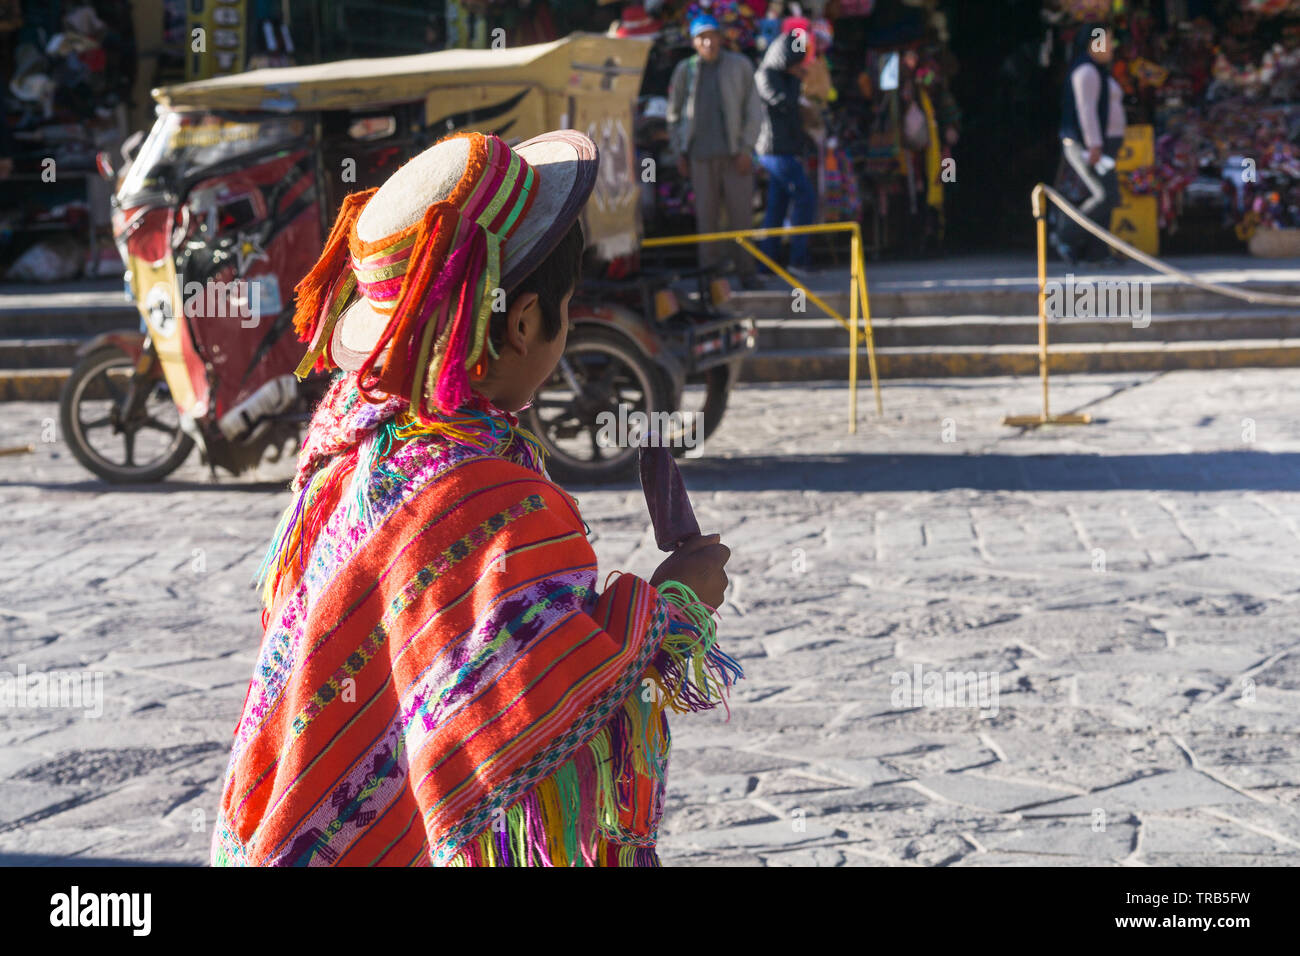 Peru junge traditionelle Kleidung - Peruanische Junge in traditioneller Kleidung isst Eis in Huancayo, Peru, Südamerika. Stockfoto